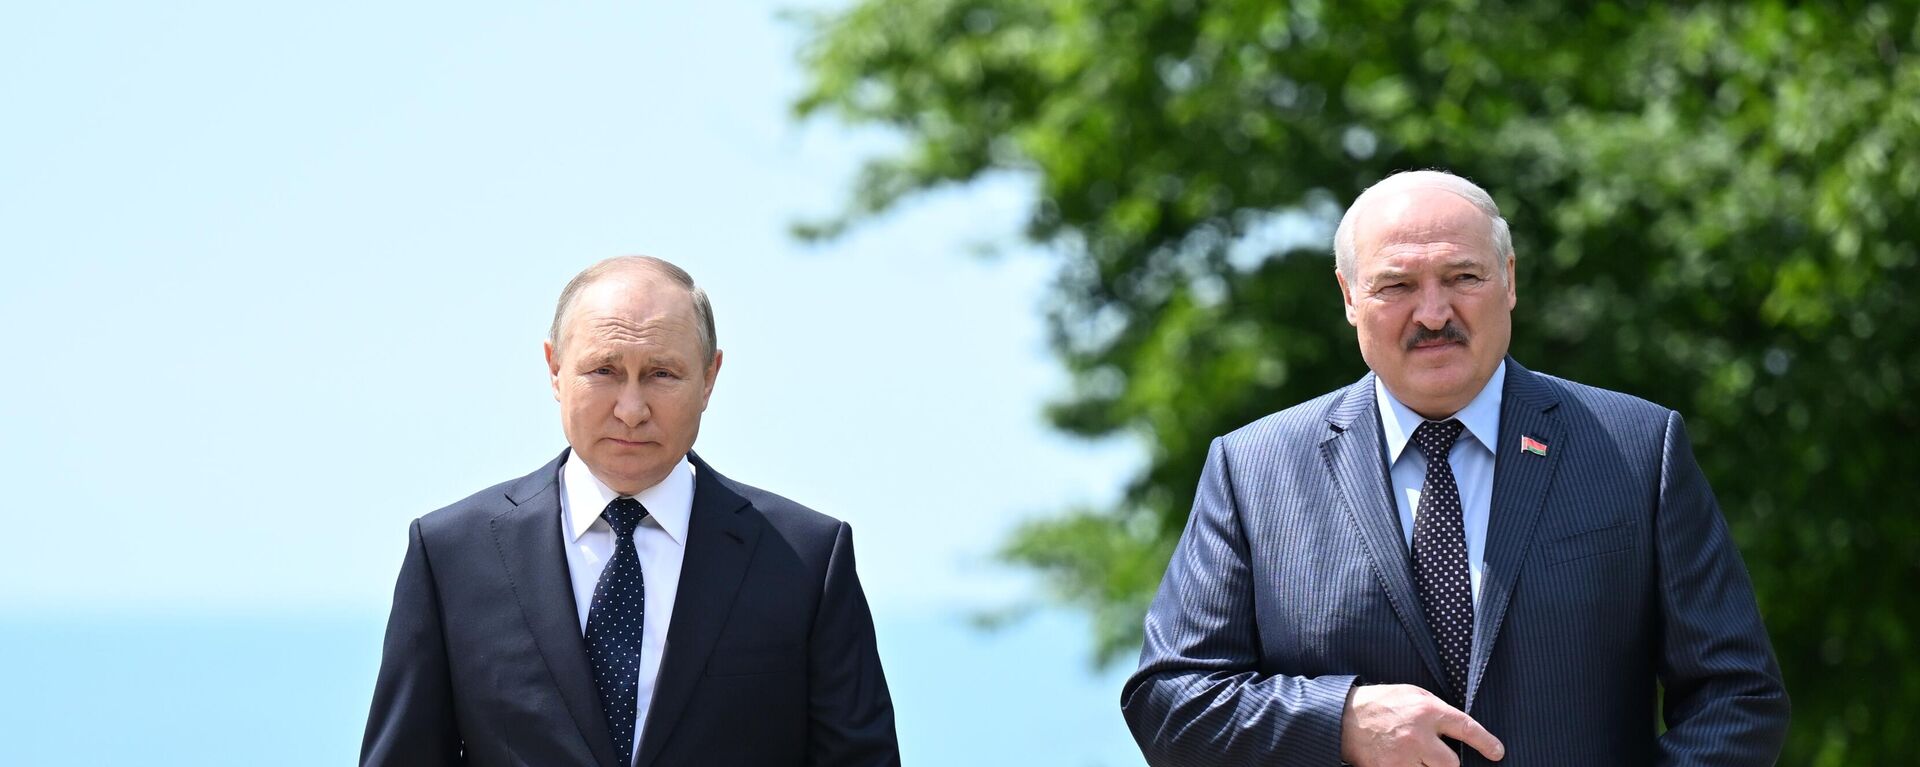 Rusiya prezidenti Vladimir Putin və Belarus prezidenti Aleksandr Lukaşenko (sağda) görüşüb - Sputnik Azərbaycan, 1920, 10.10.2022